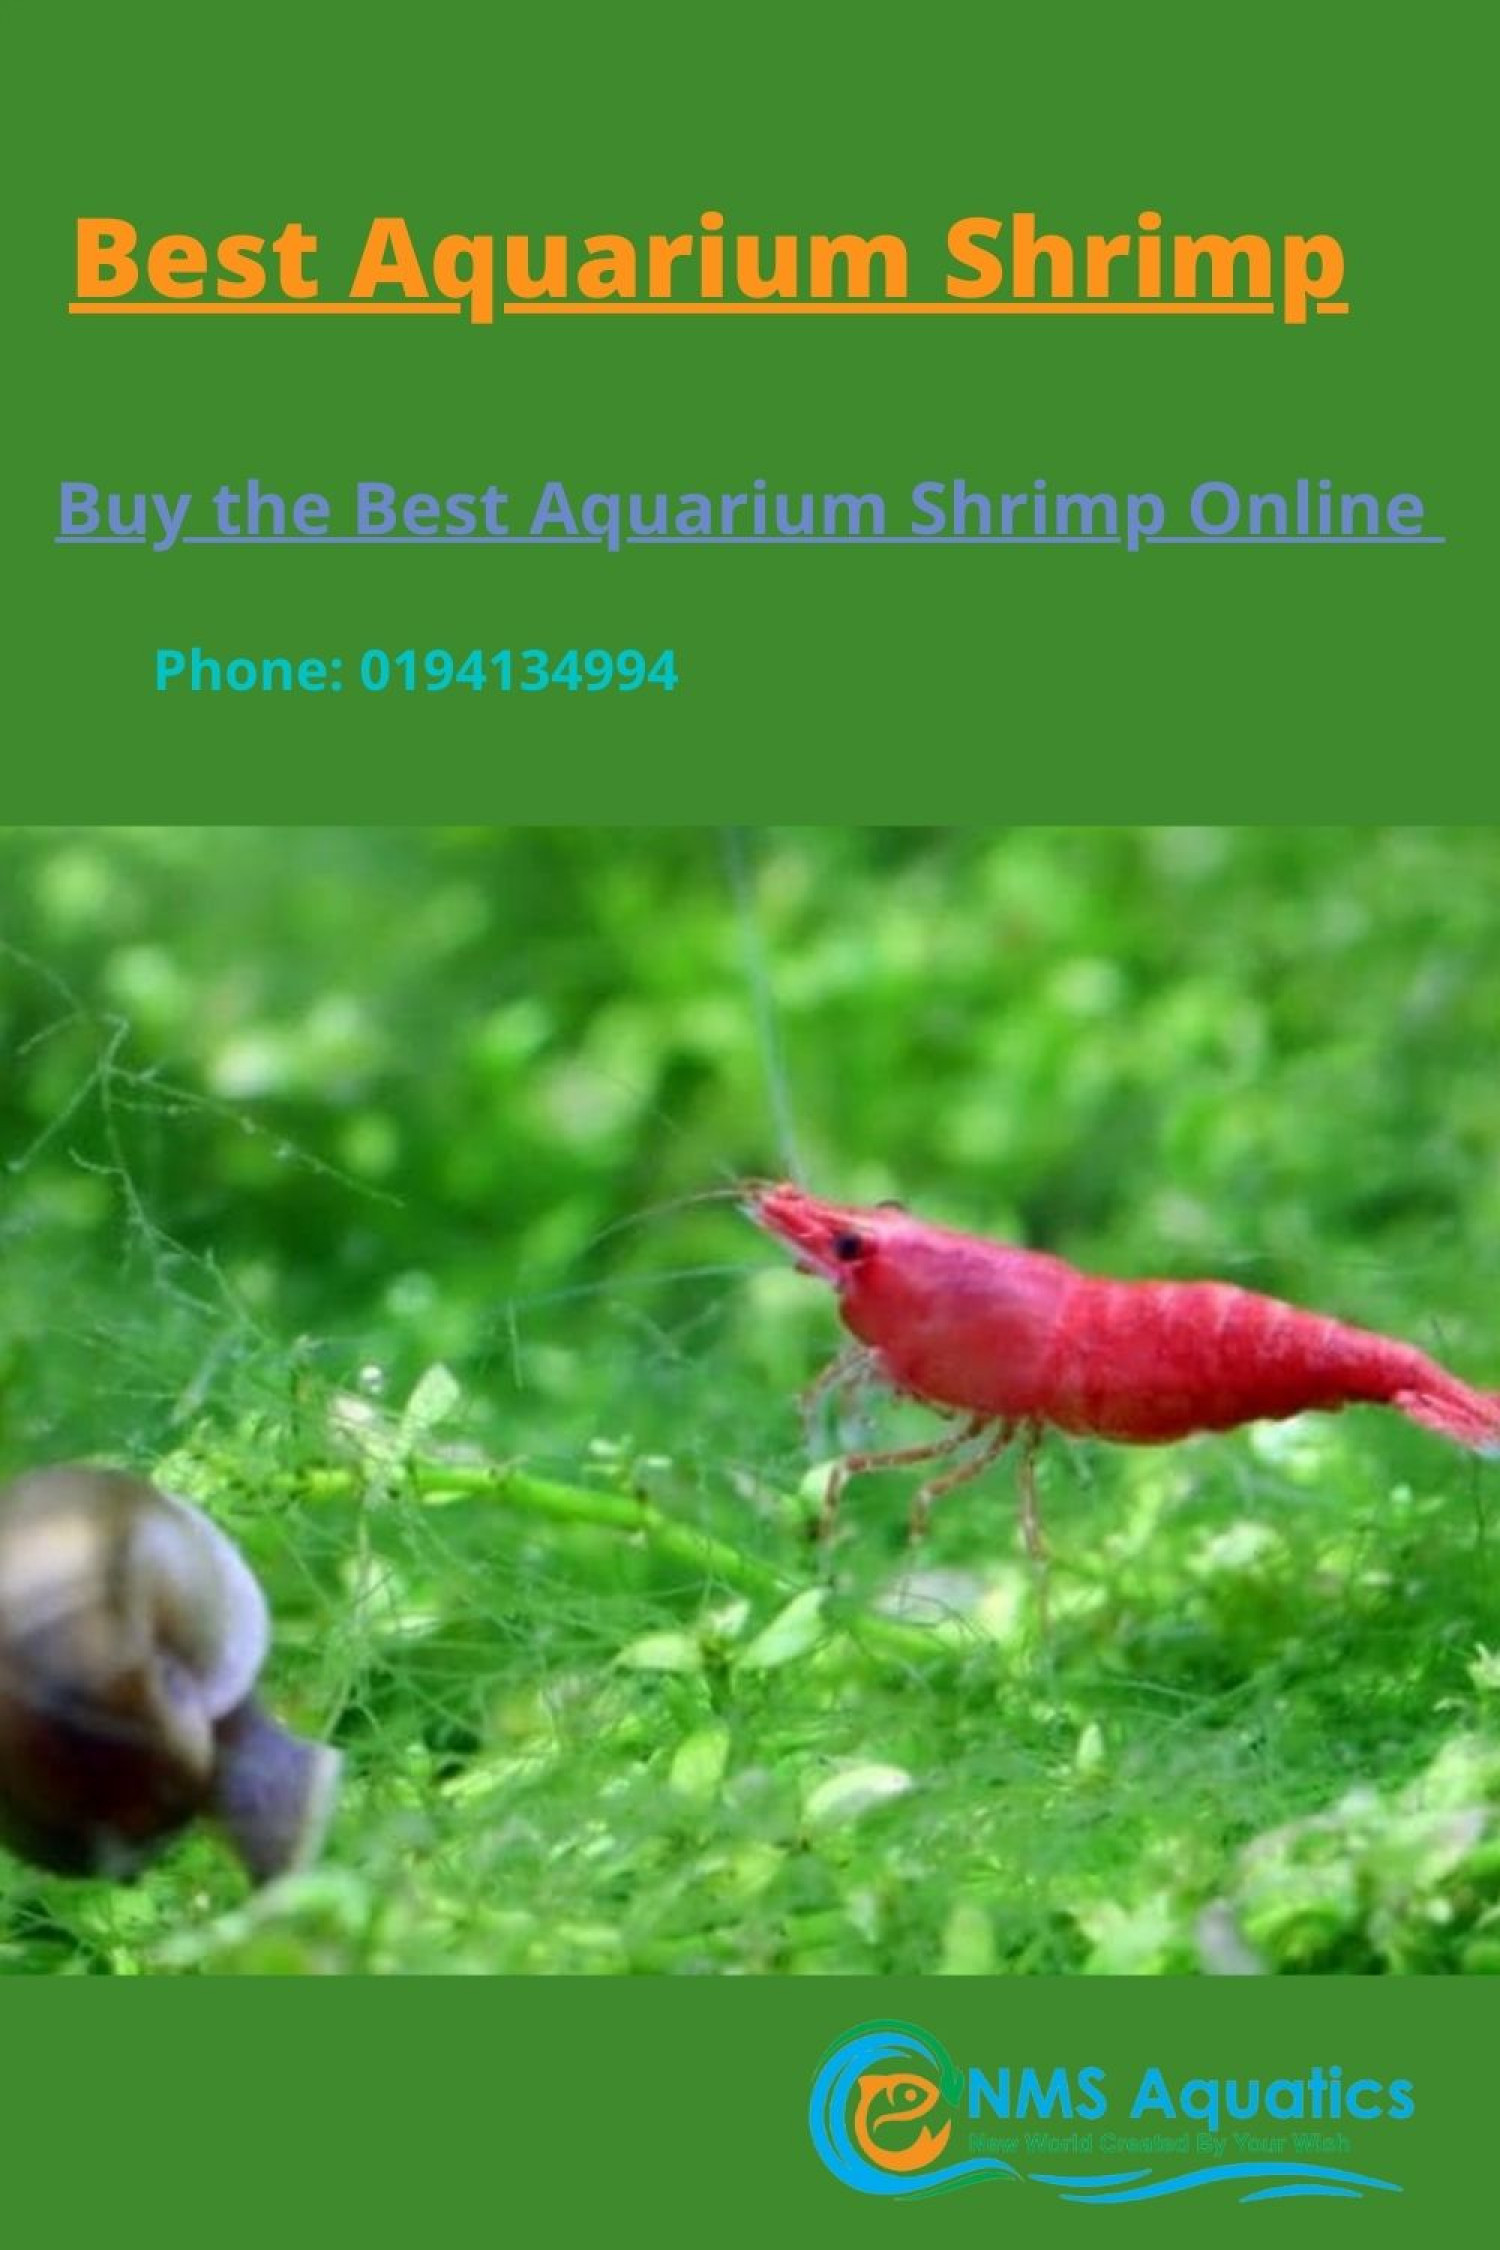 Aquarium Shrimp Infographic